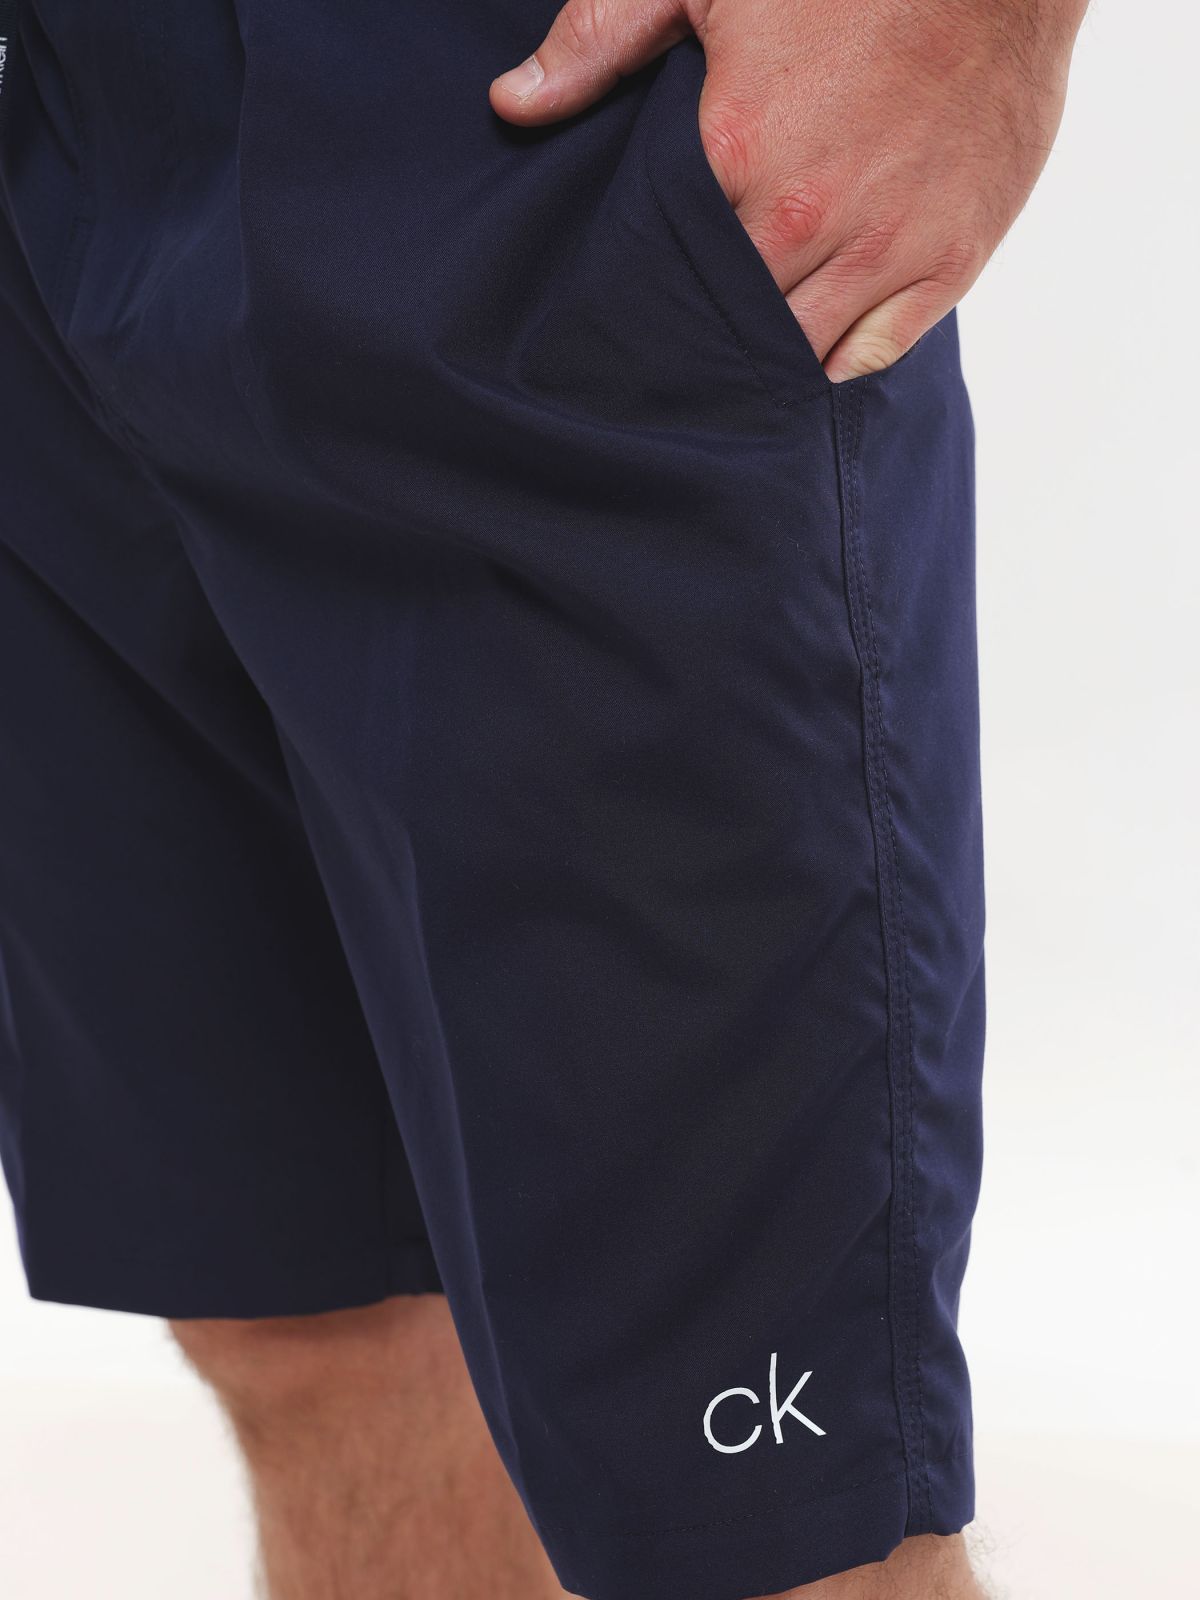  מכנסי גלישה עם הדפס לוגו של CALVIN KLEIN